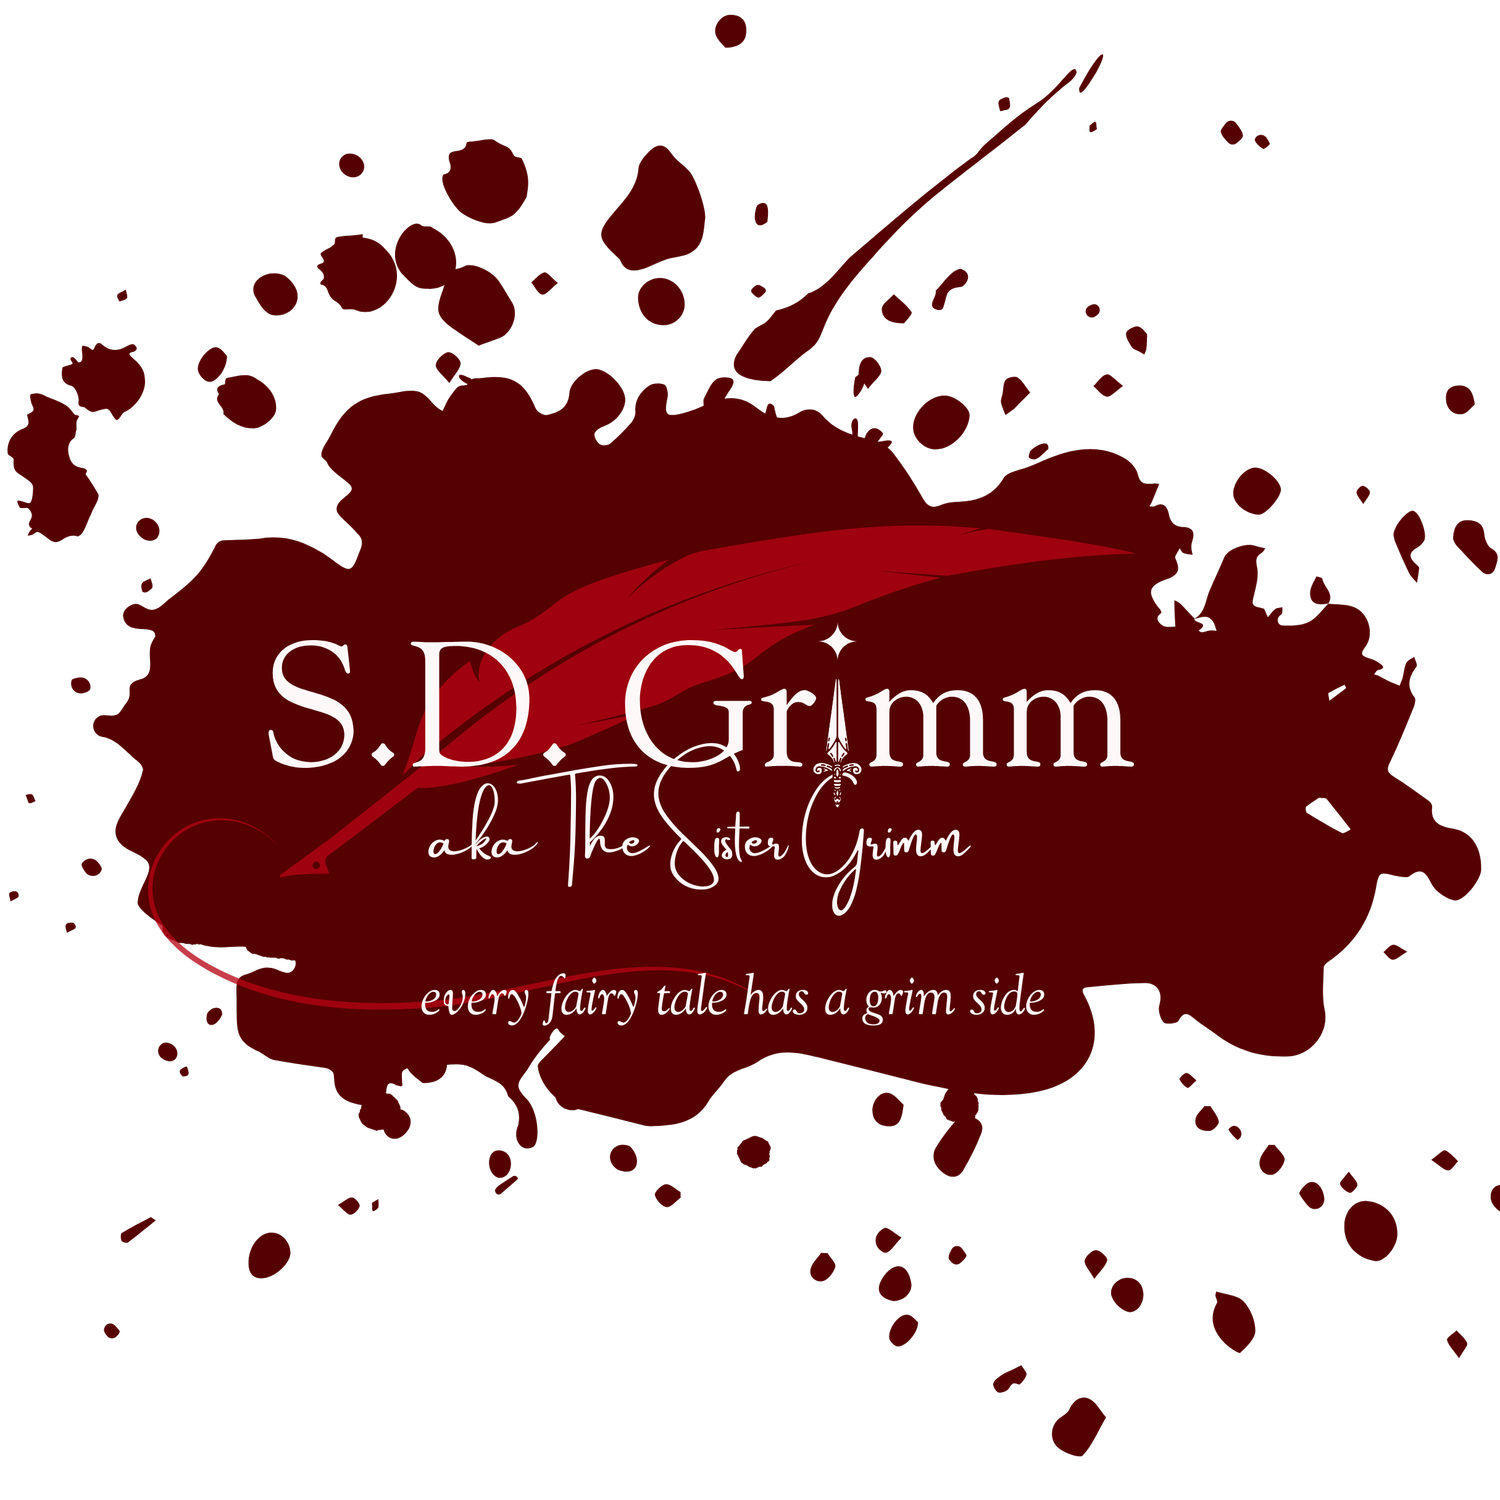 S.D. Grimm, Author